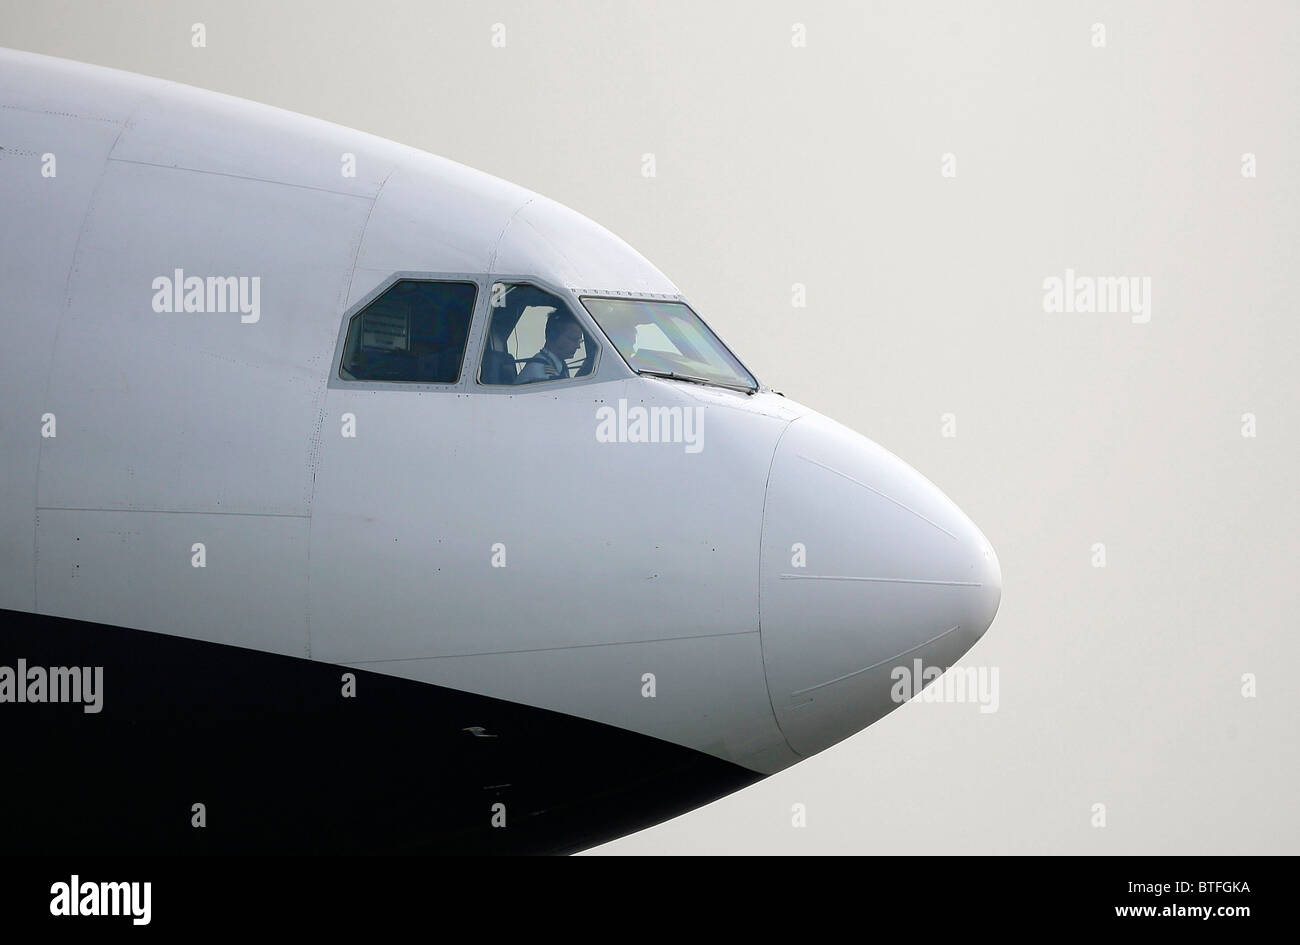 Ein Pilot und erster Offizier-Blick aus dem Flugdeck Windschutzscheibe ausziehen wie sie auf Flughäfen Gatwick Laufsteg vor dem taxi. Bild von James Boardman Stockfoto